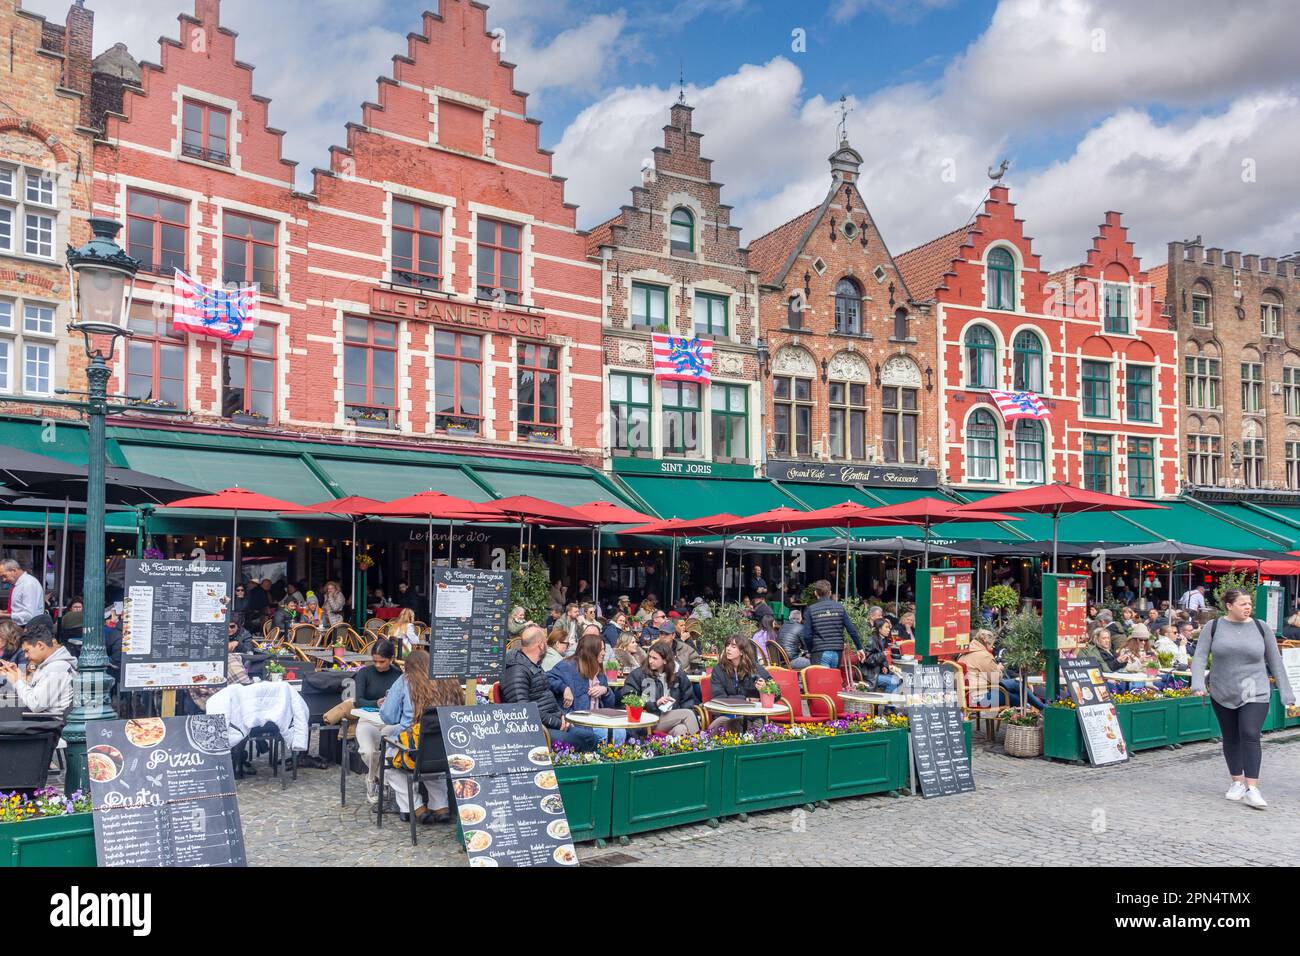 Medieval building facades in The Markt (Market Square), Brugge (Bruges), West Flanders Province, Flemish Region, Belgium Stock Photo